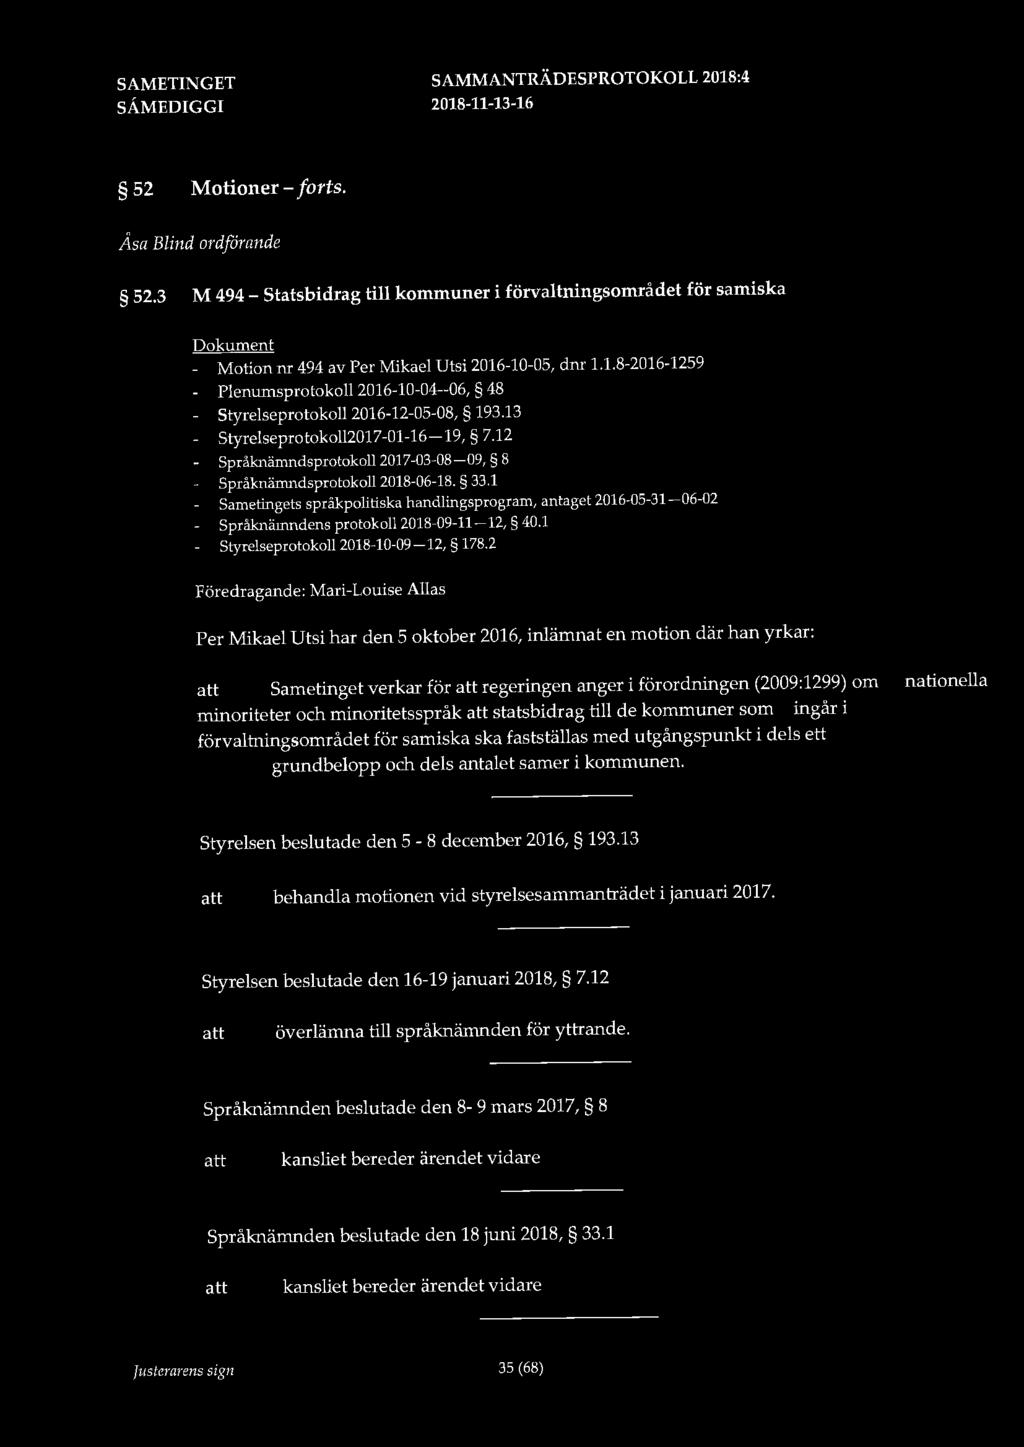 52 Motioner - forts. Åsa Blind ordförande 52.3 M 494 - Statsbidrag till kommuner i förvaltningsområdet för samiska Dokument - Motion nr 494 av Per Mikael Utsi 2016